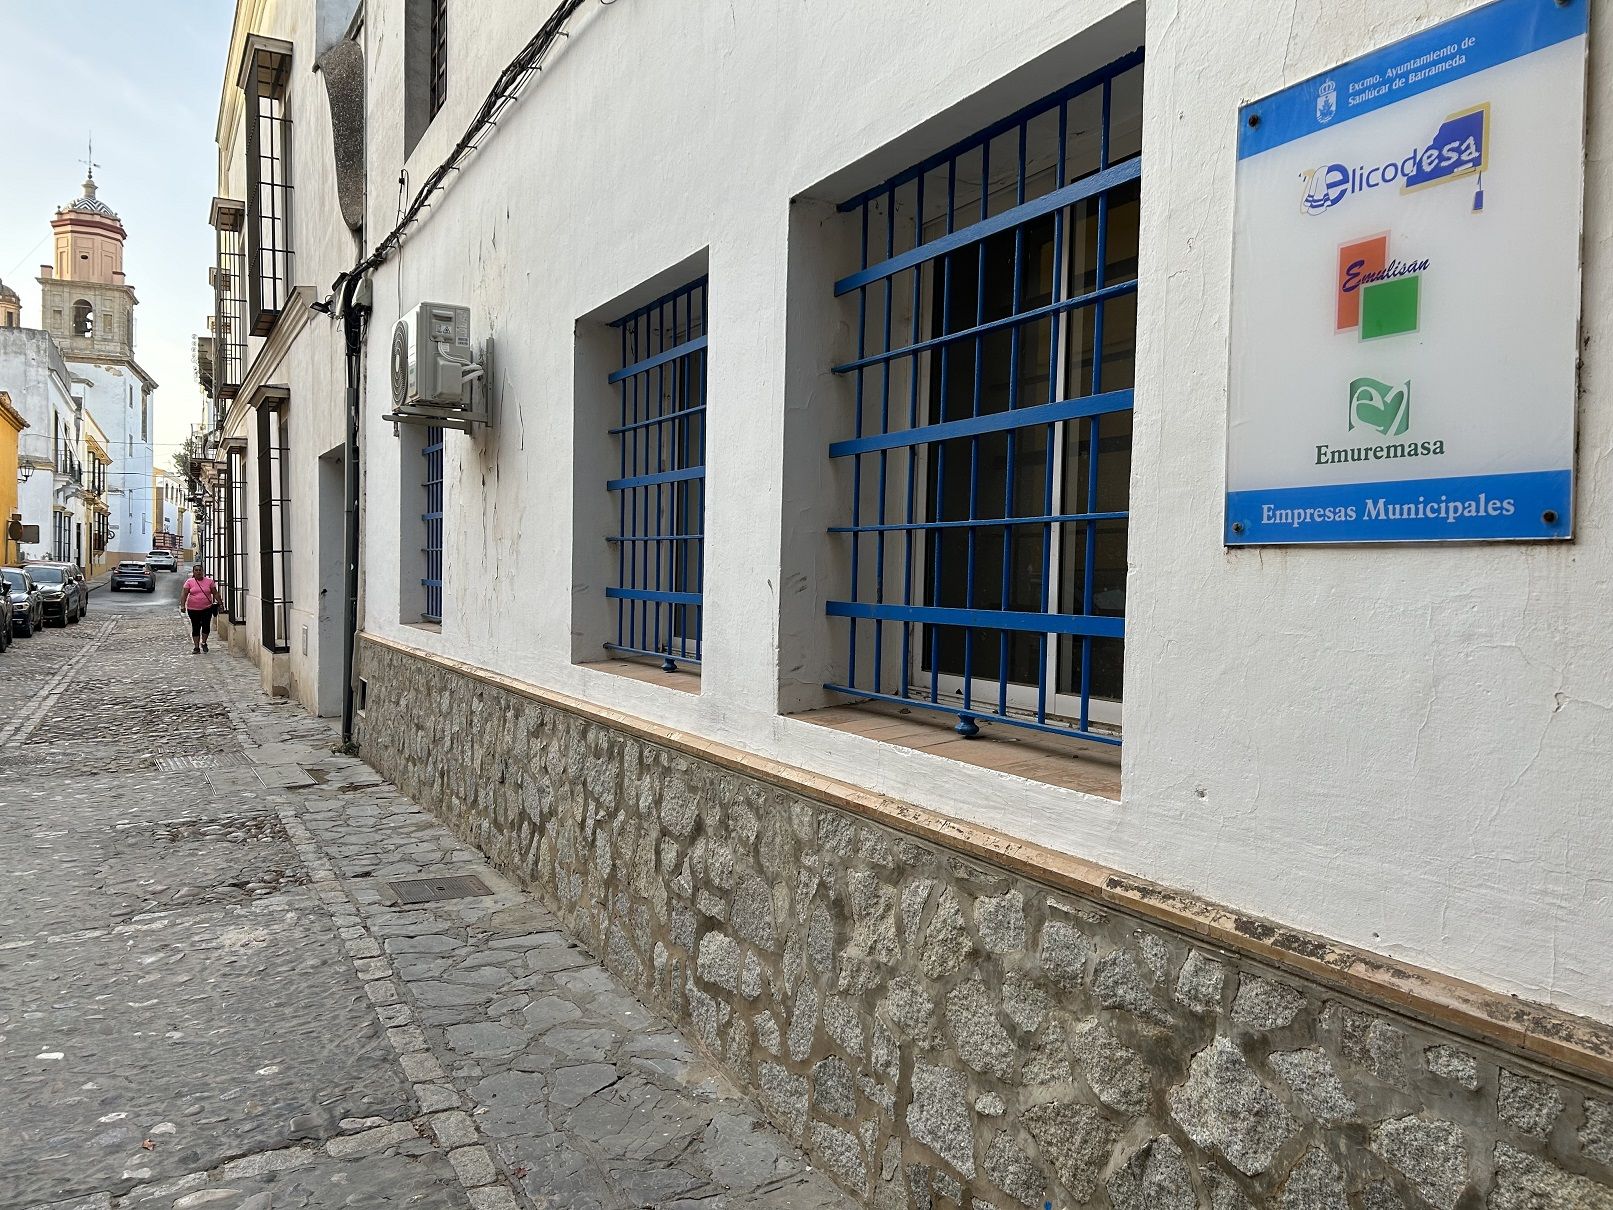 Oficina de Elicodesa, la empresa municipal de Sanlúcar que ha abierto una oferta pública de empleo "sin precedentes".